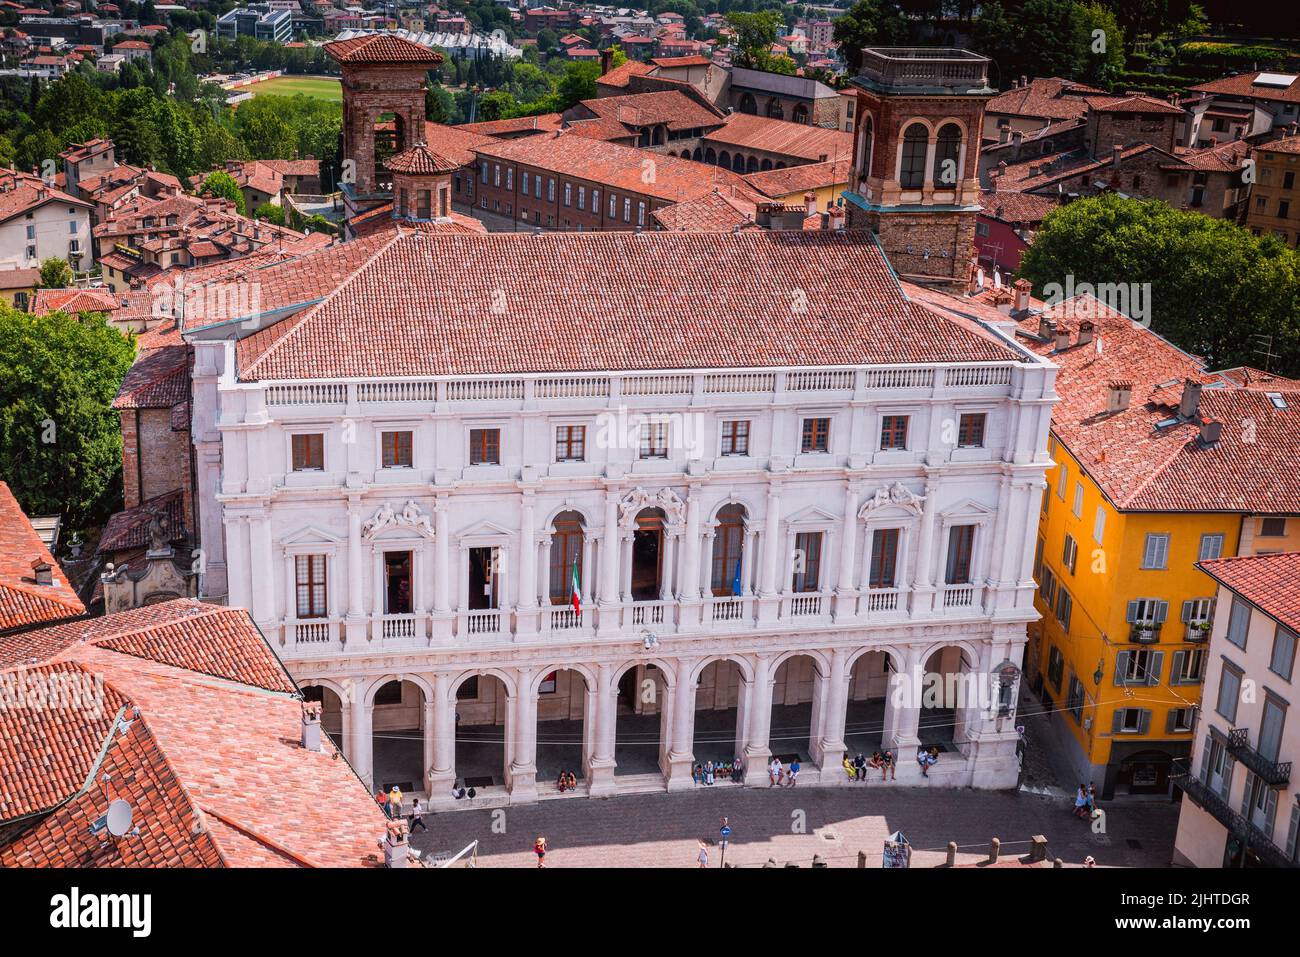 La Biblioteca Civica Angelo mai di Bergamo. Piazza Vecchia è la piazza di Bergamo situata nella parte alta della città, sede per molti secoli del Foto Stock